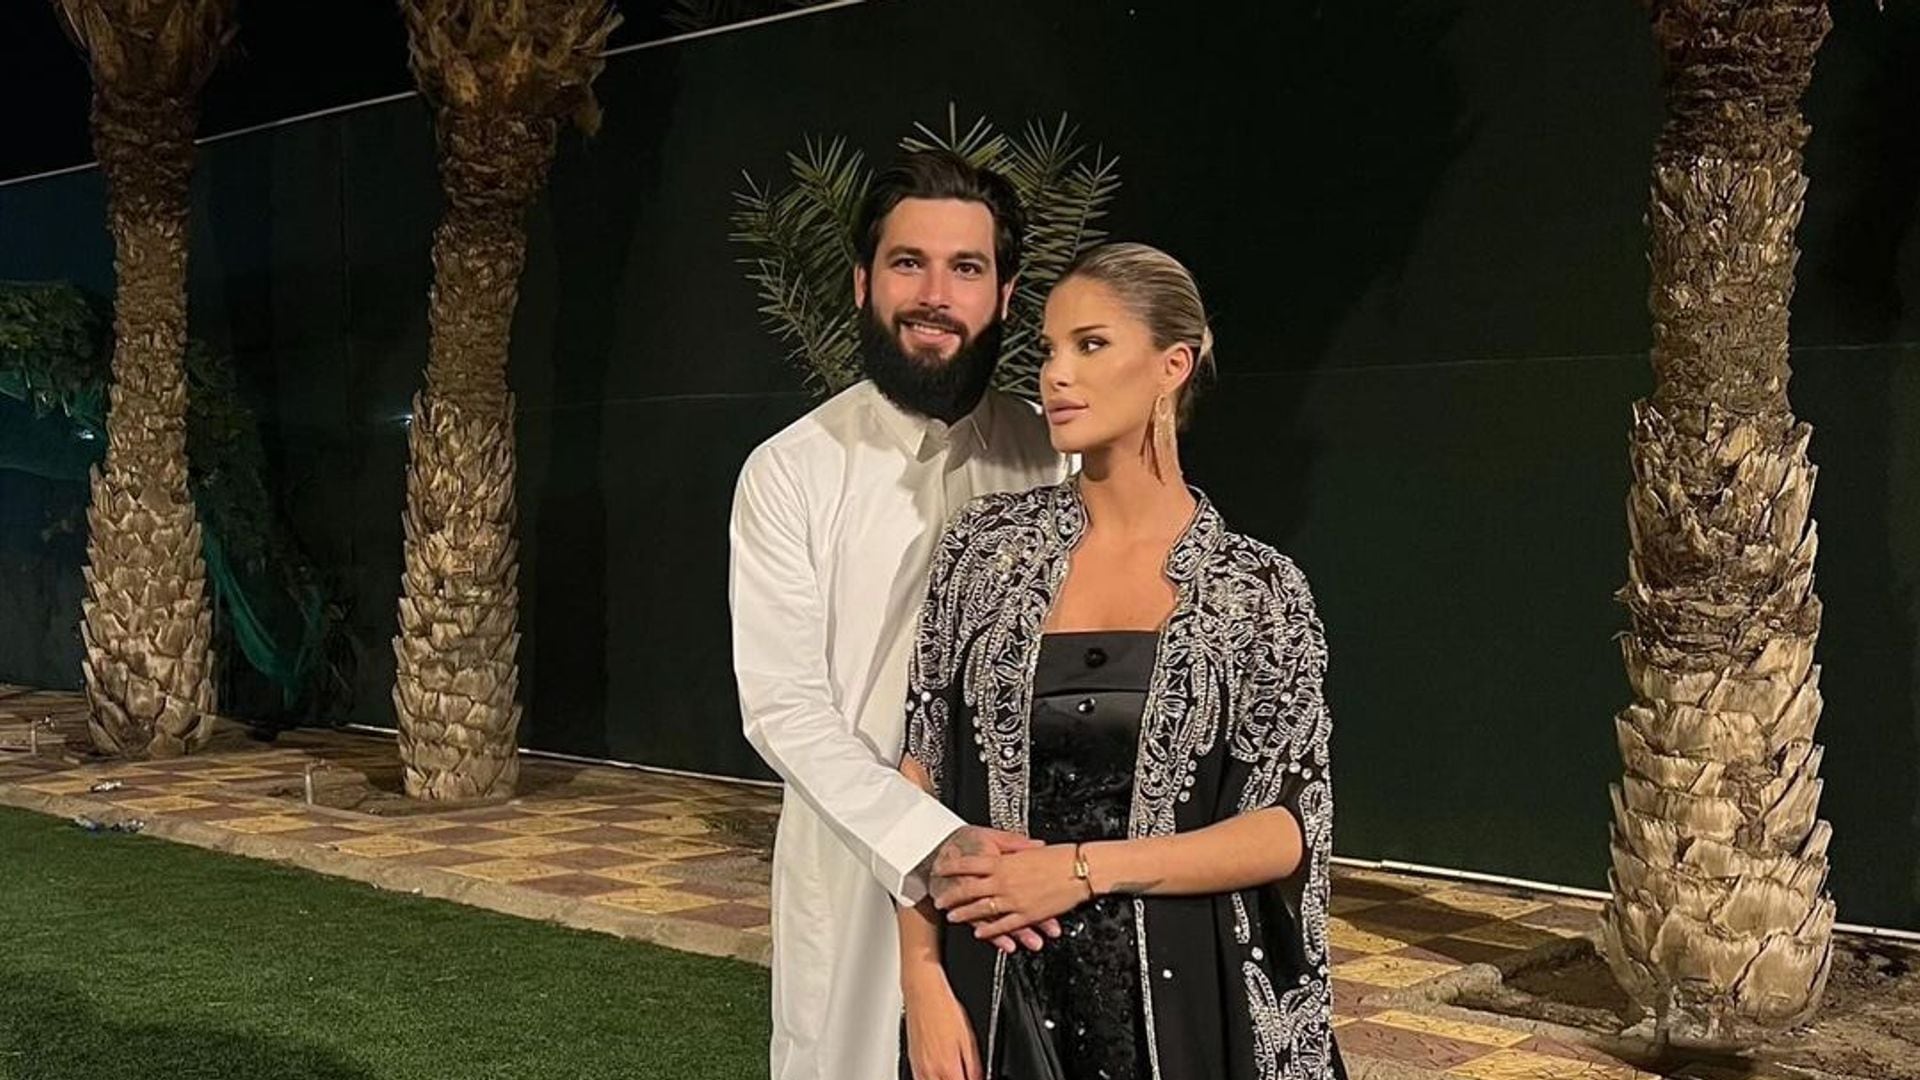 La boda sorpresa de Jota Peleteiro en Arabia Saudí con la modelo Ajla Etemovic cinco meses después de su conversión al Islam